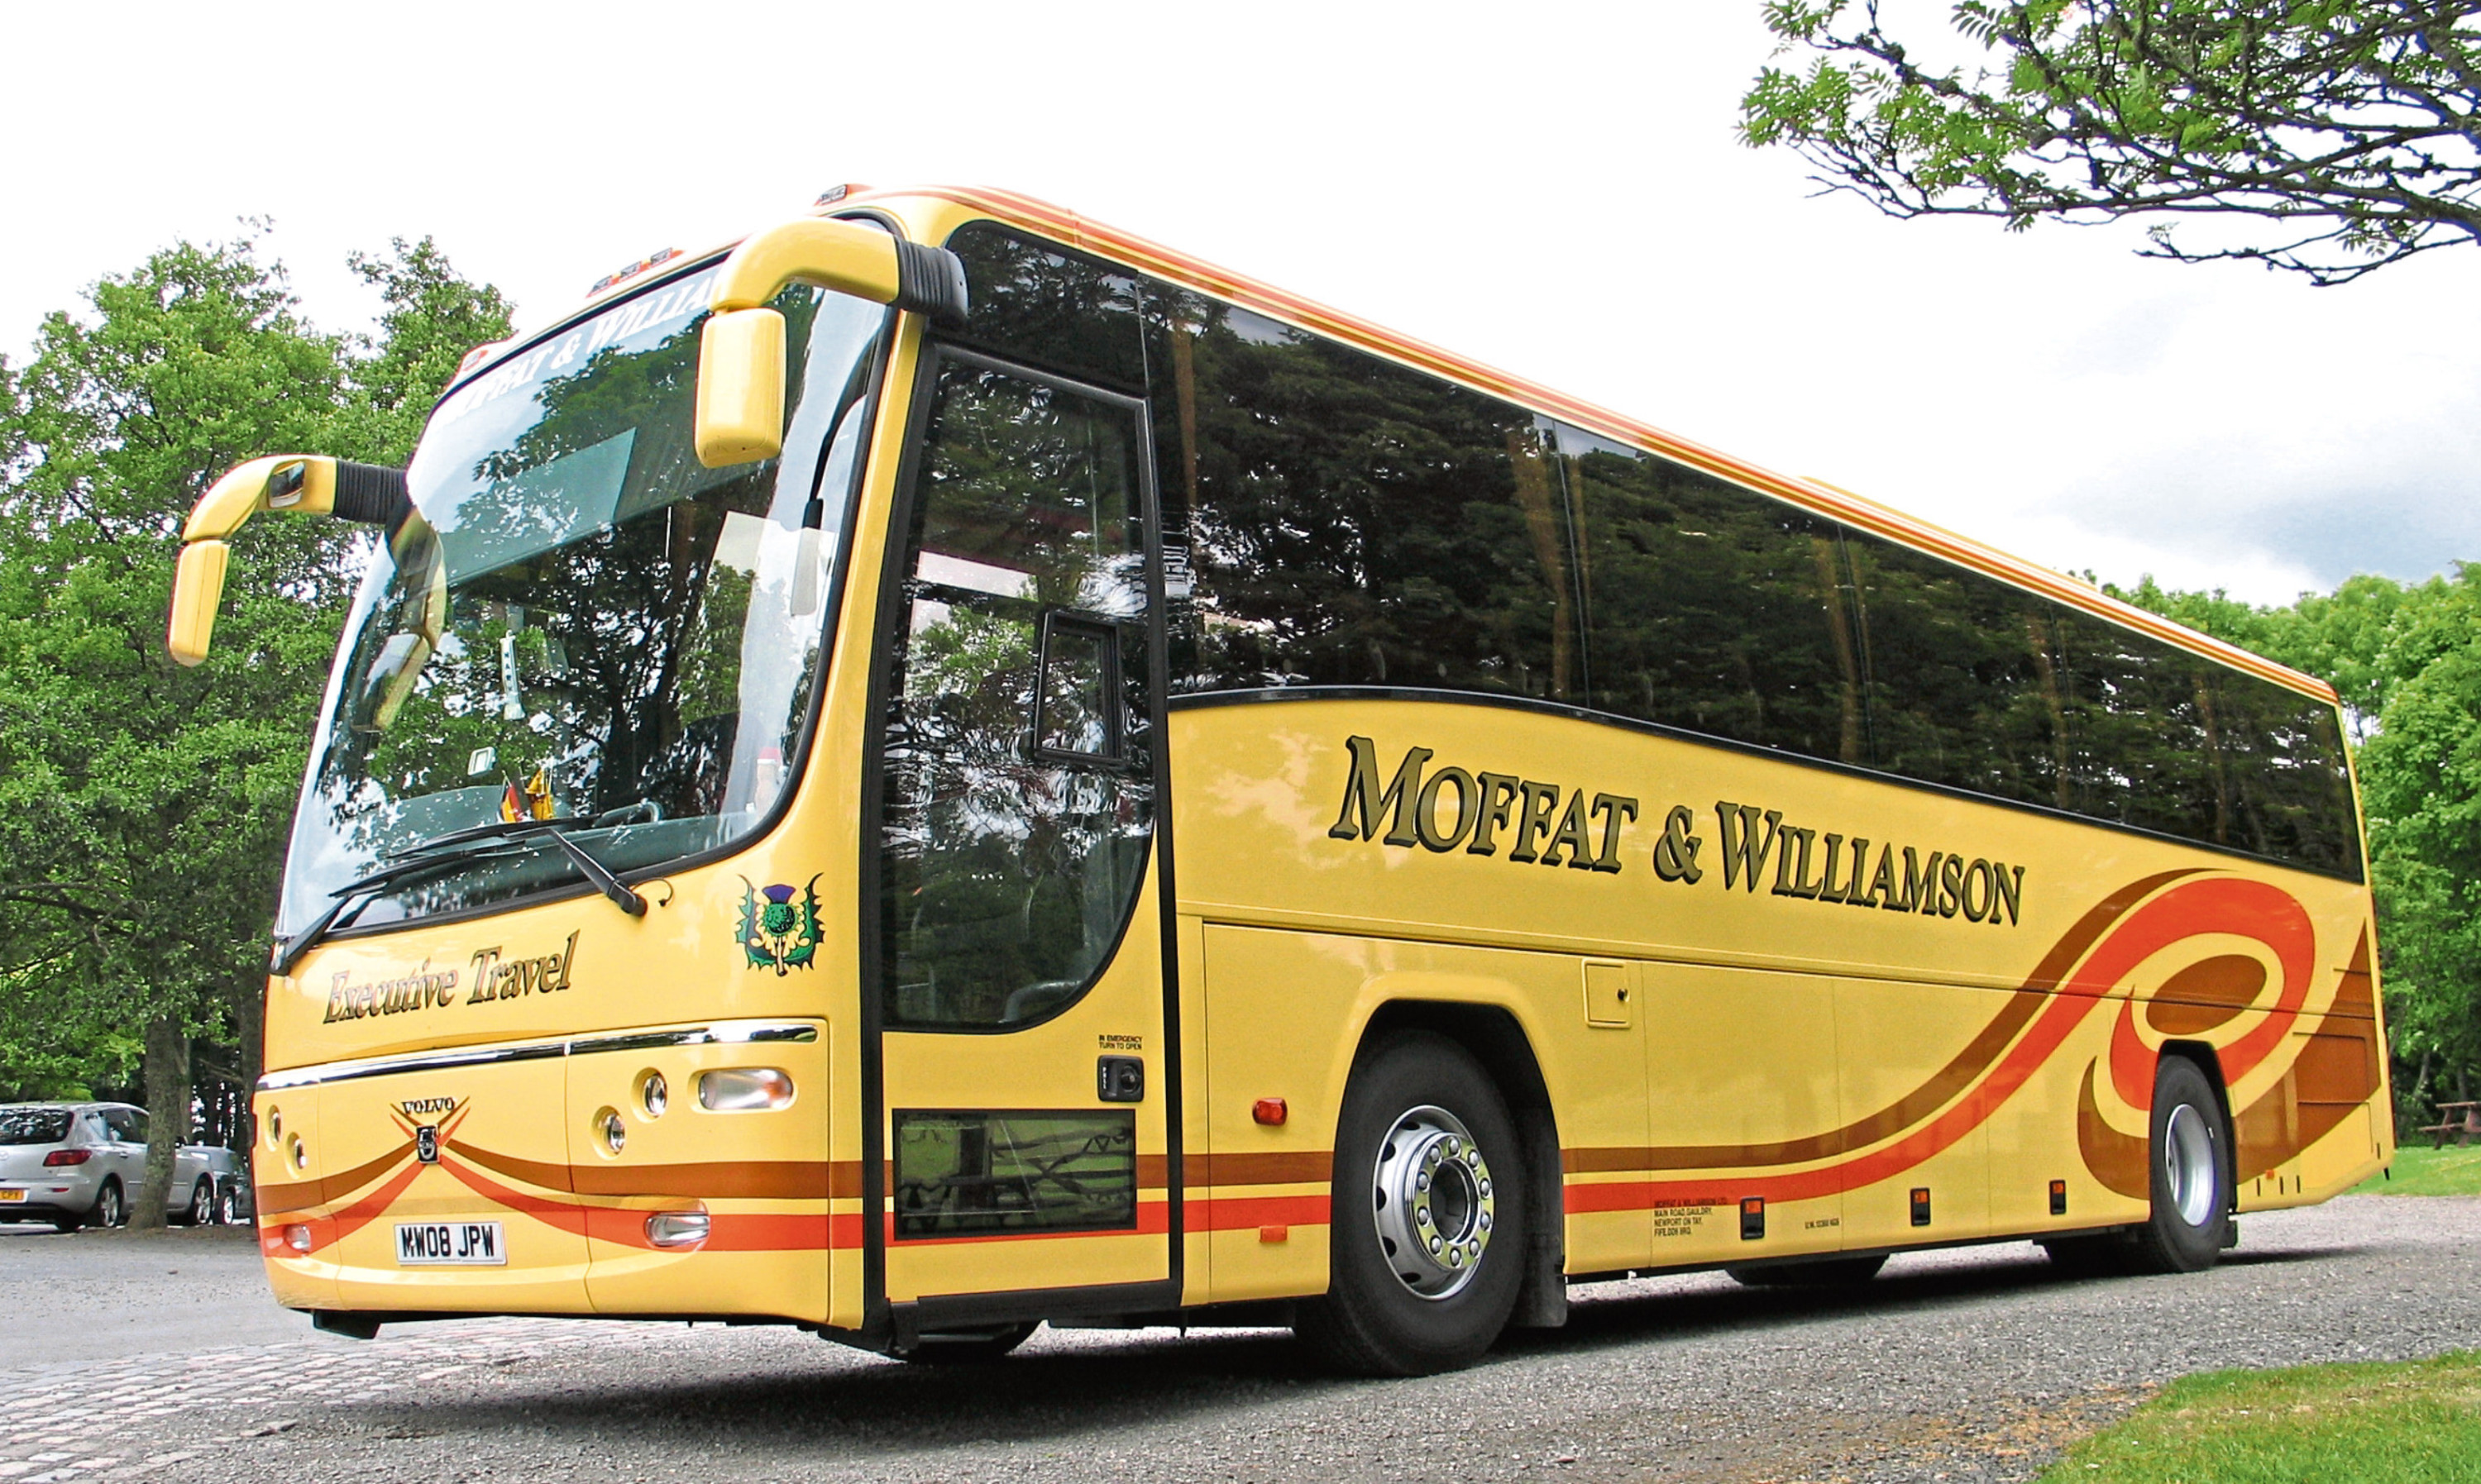 A Moffat & Williamson bus